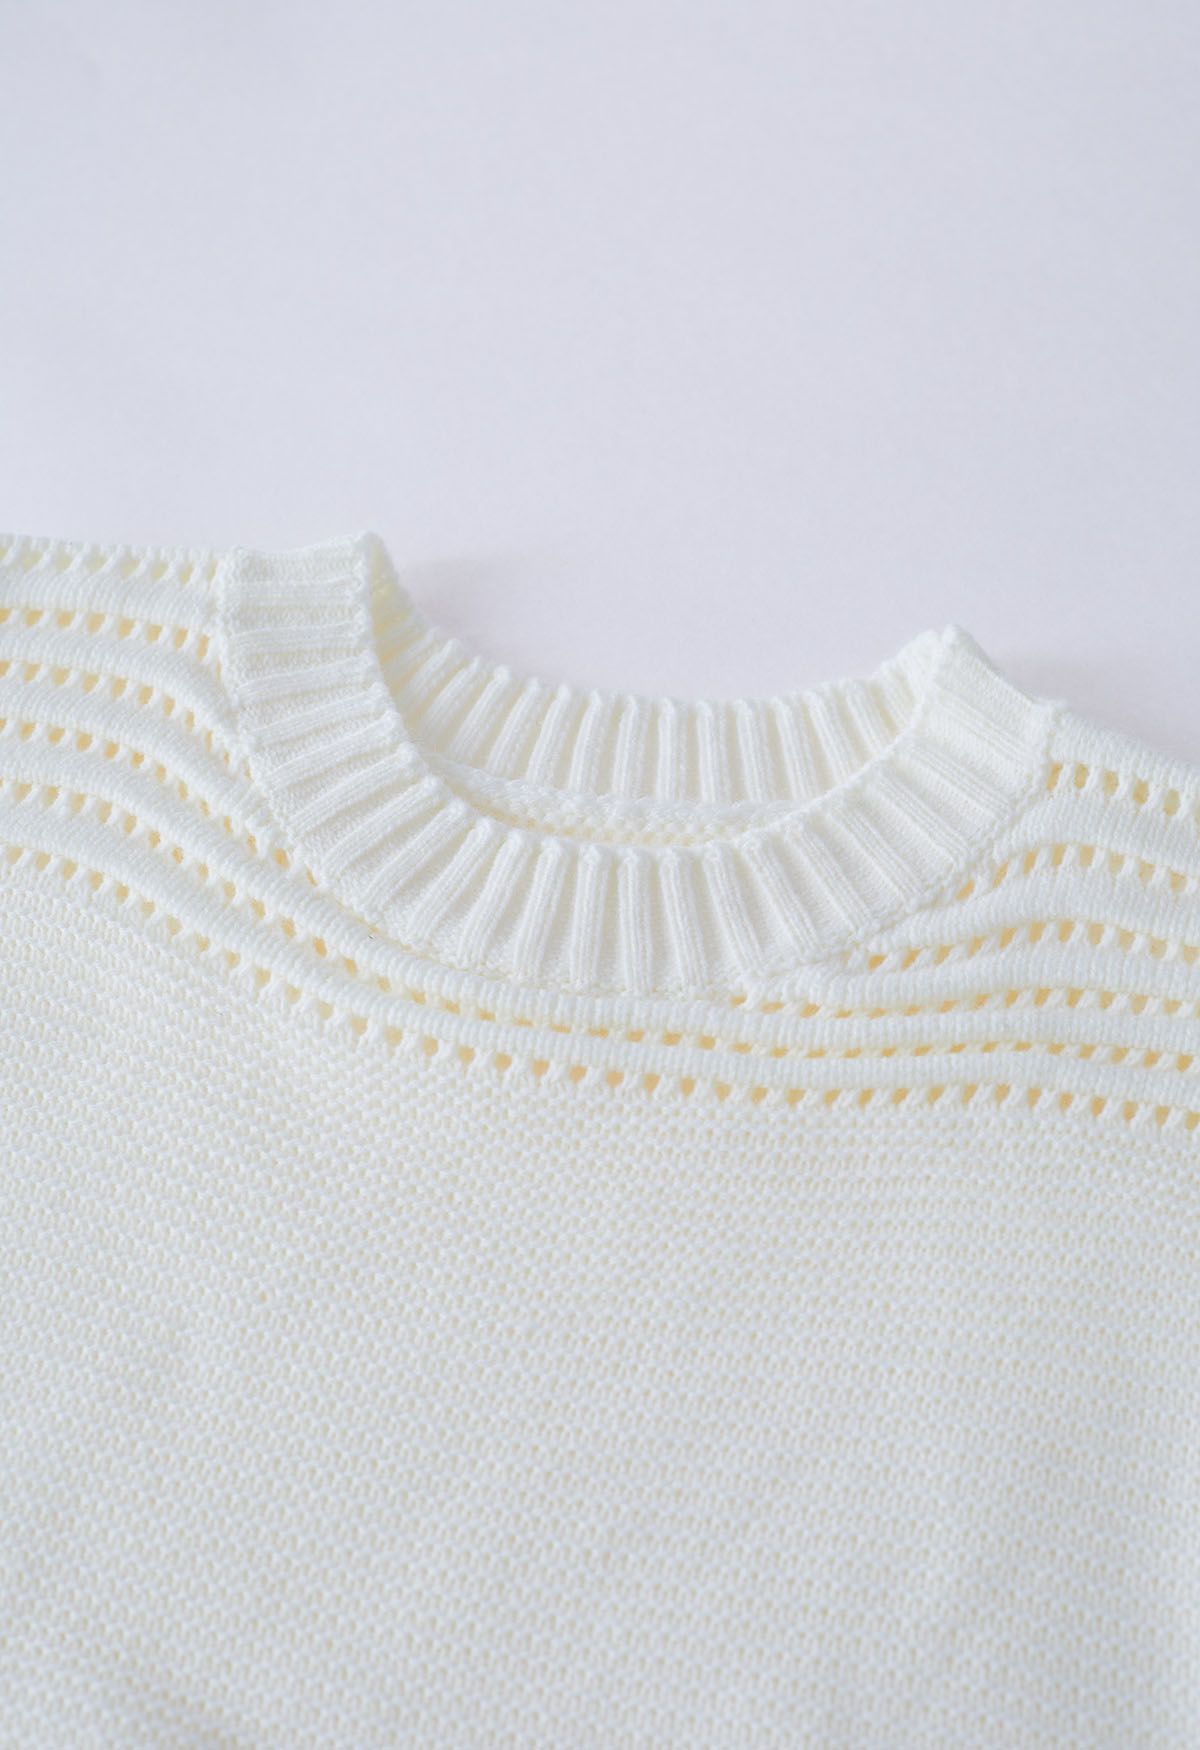 Suéter de punto calado con rayas en relieve en blanco